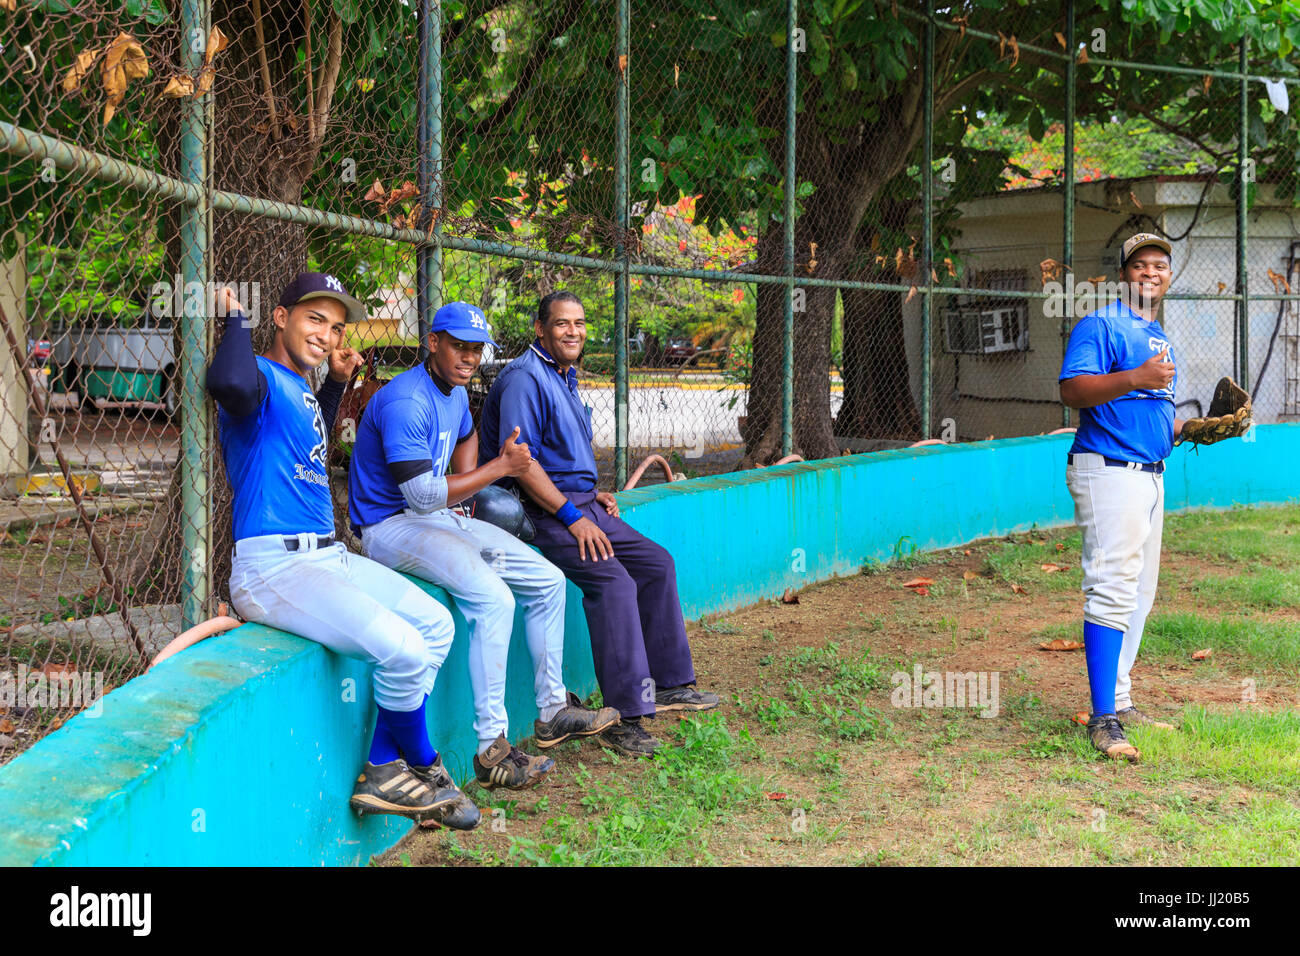 I giocatori dalla sommità del baseball cubano Havana team Industriales durante la pratica su un campo di addestramento a l'Avana, Cuba Foto Stock